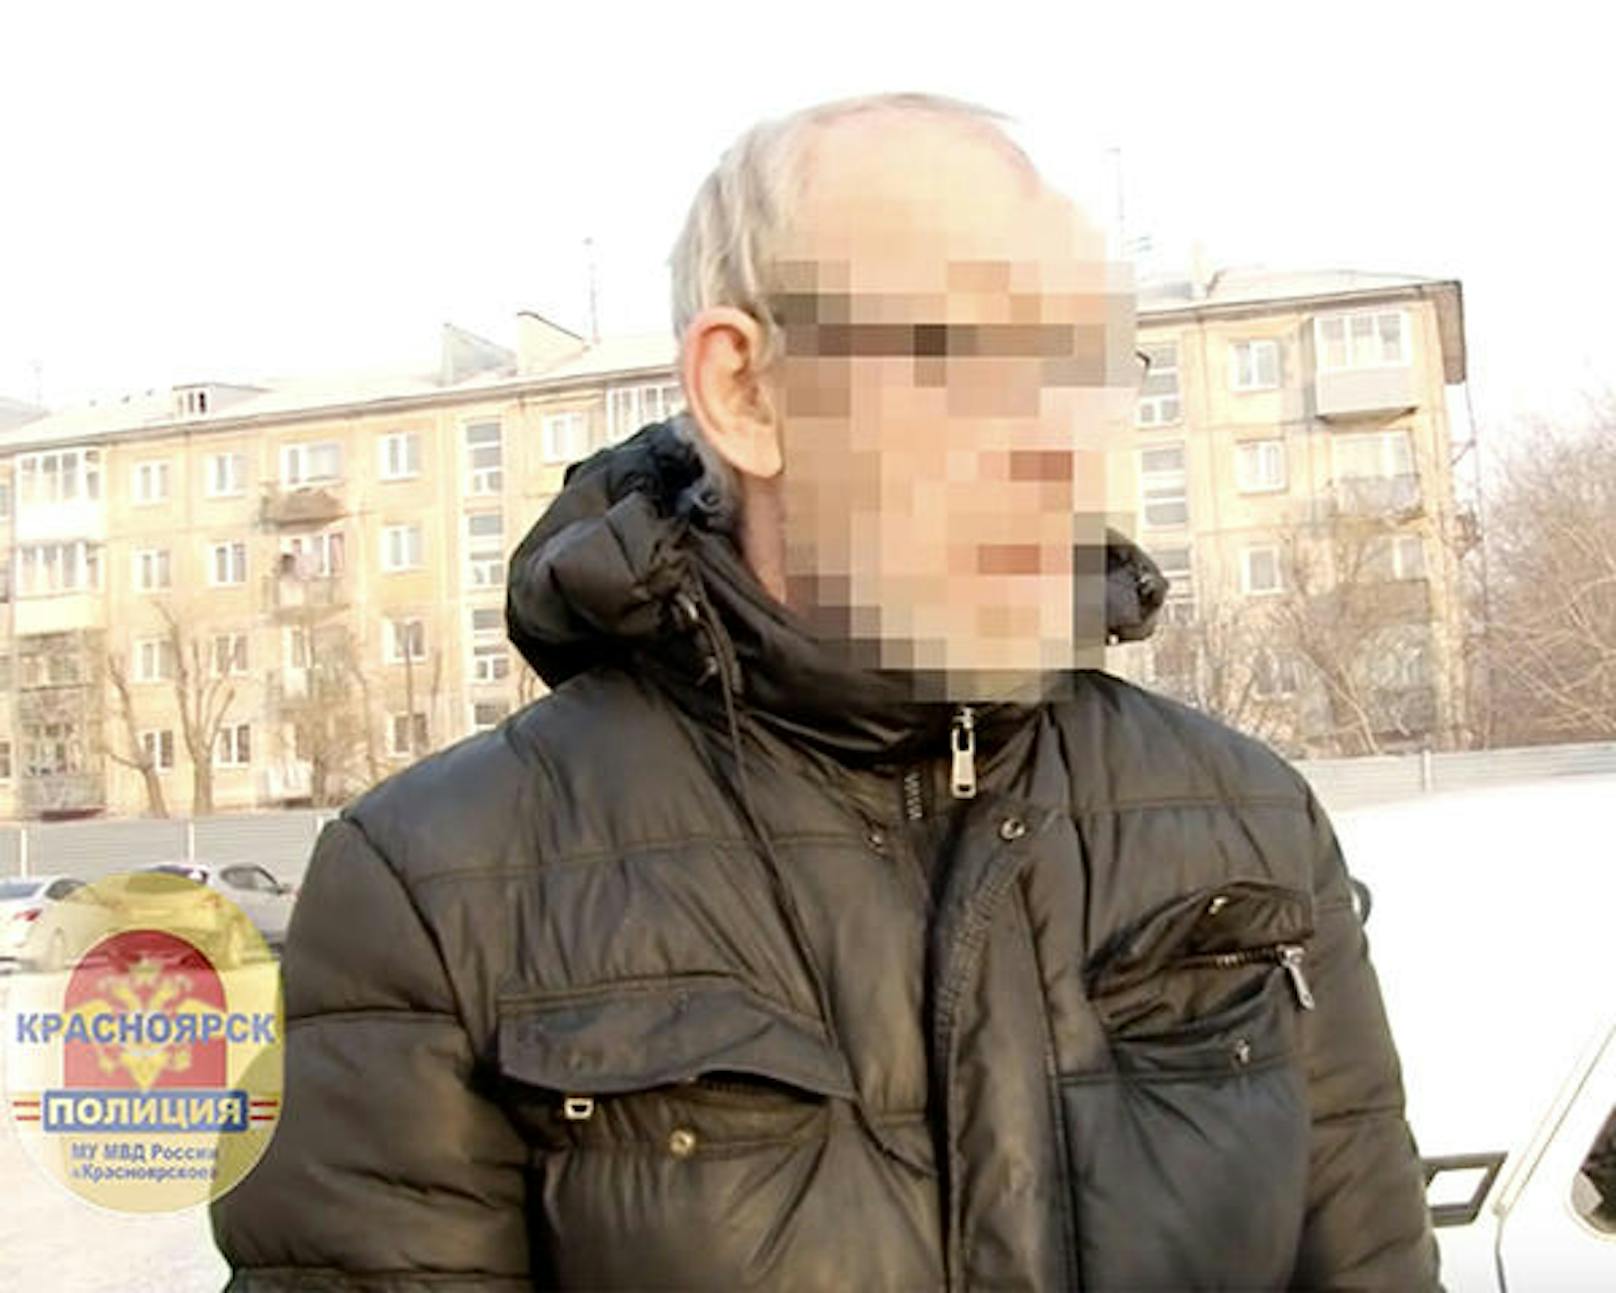 Nikolay B. (60) konnte schließlich an einer Bushaltestelle ausfindig gemacht und festgenommen werden.